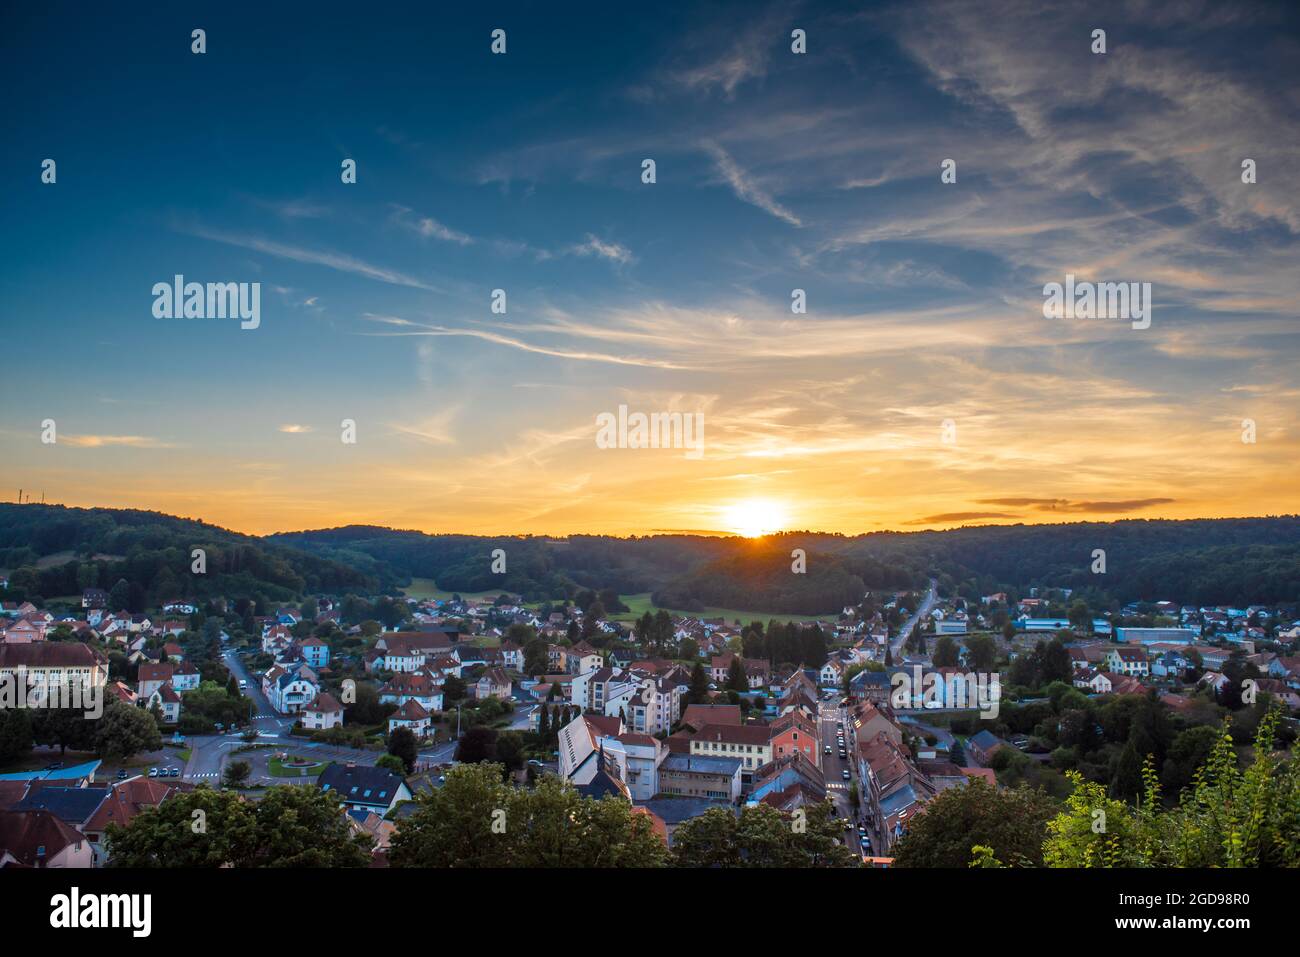 Ville de Bitche au coucher de soleil, France, Moselle Stock Photo